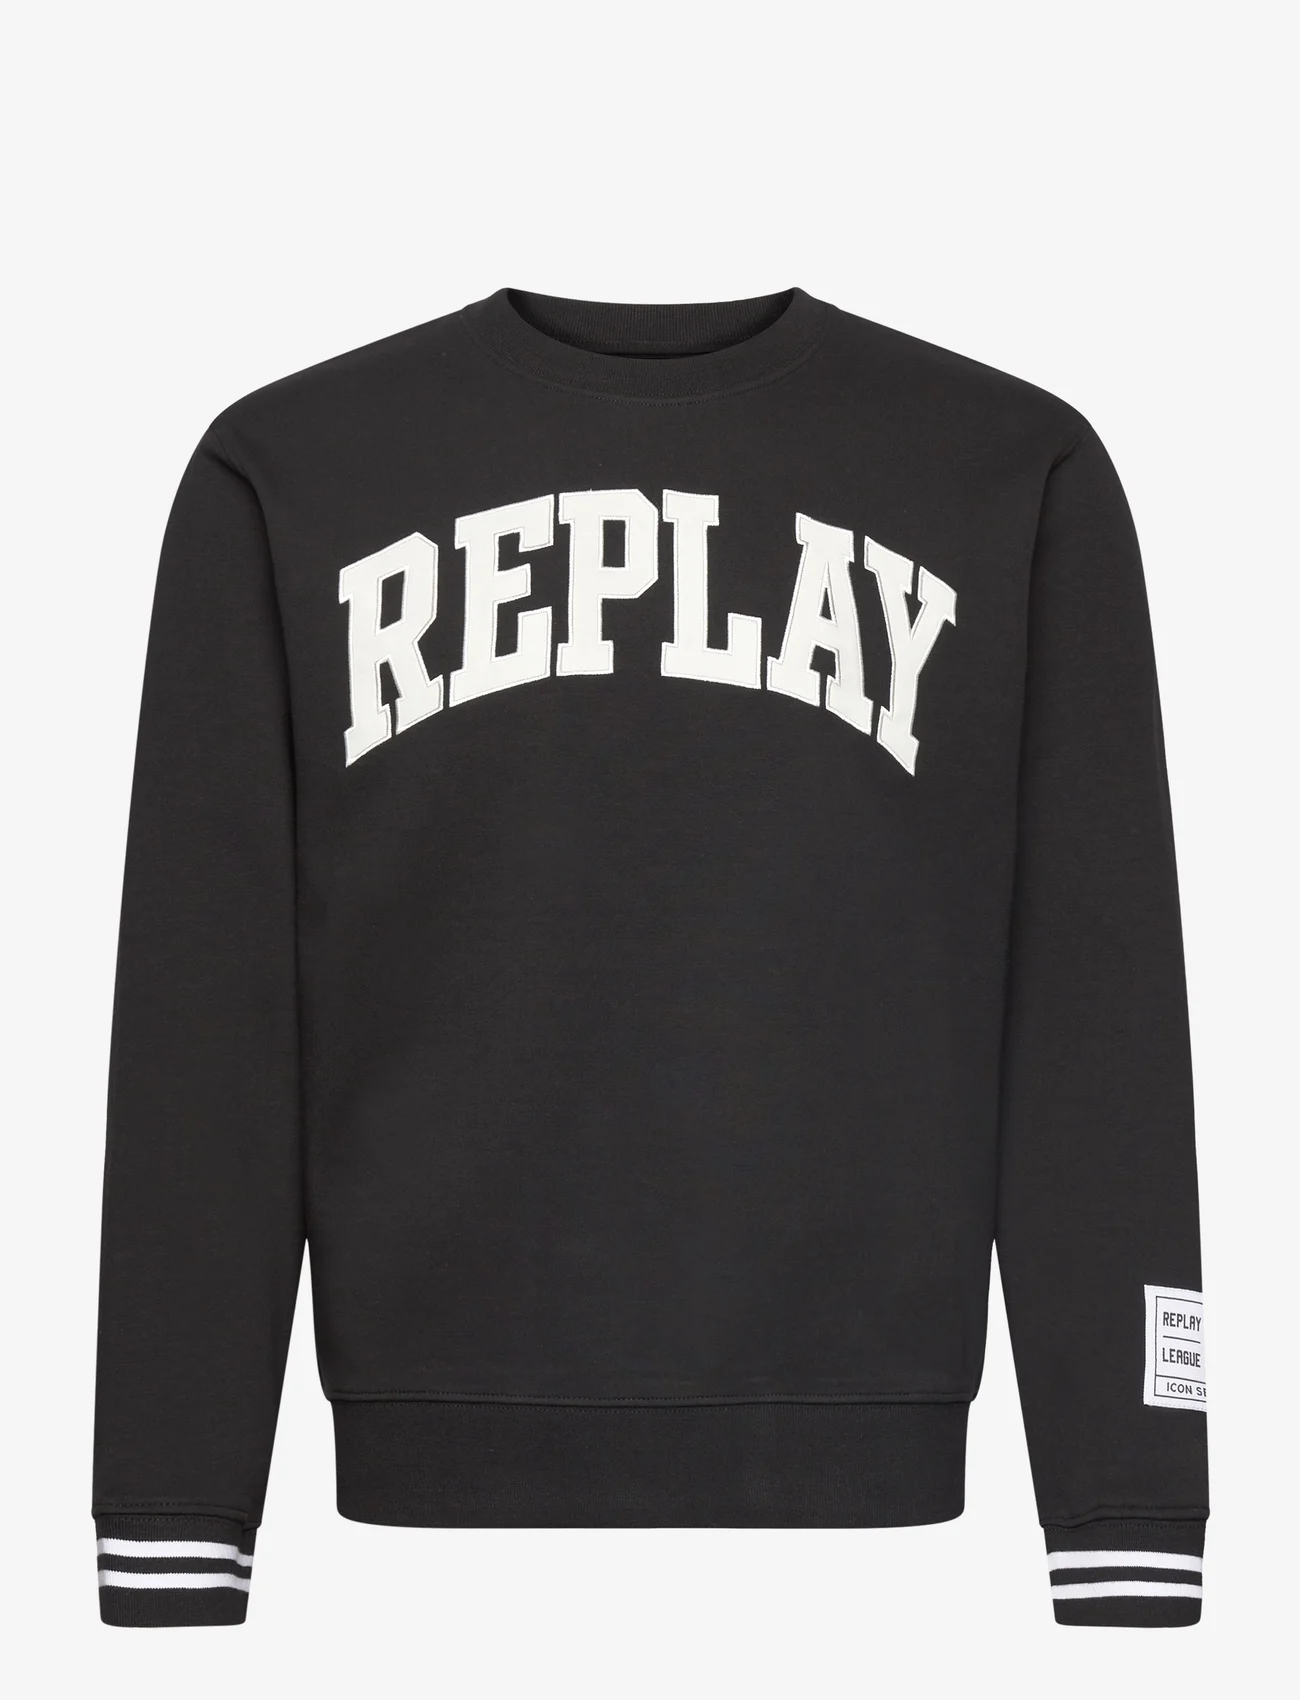 Replay - Jumper REGULAR - swetry - black - 0